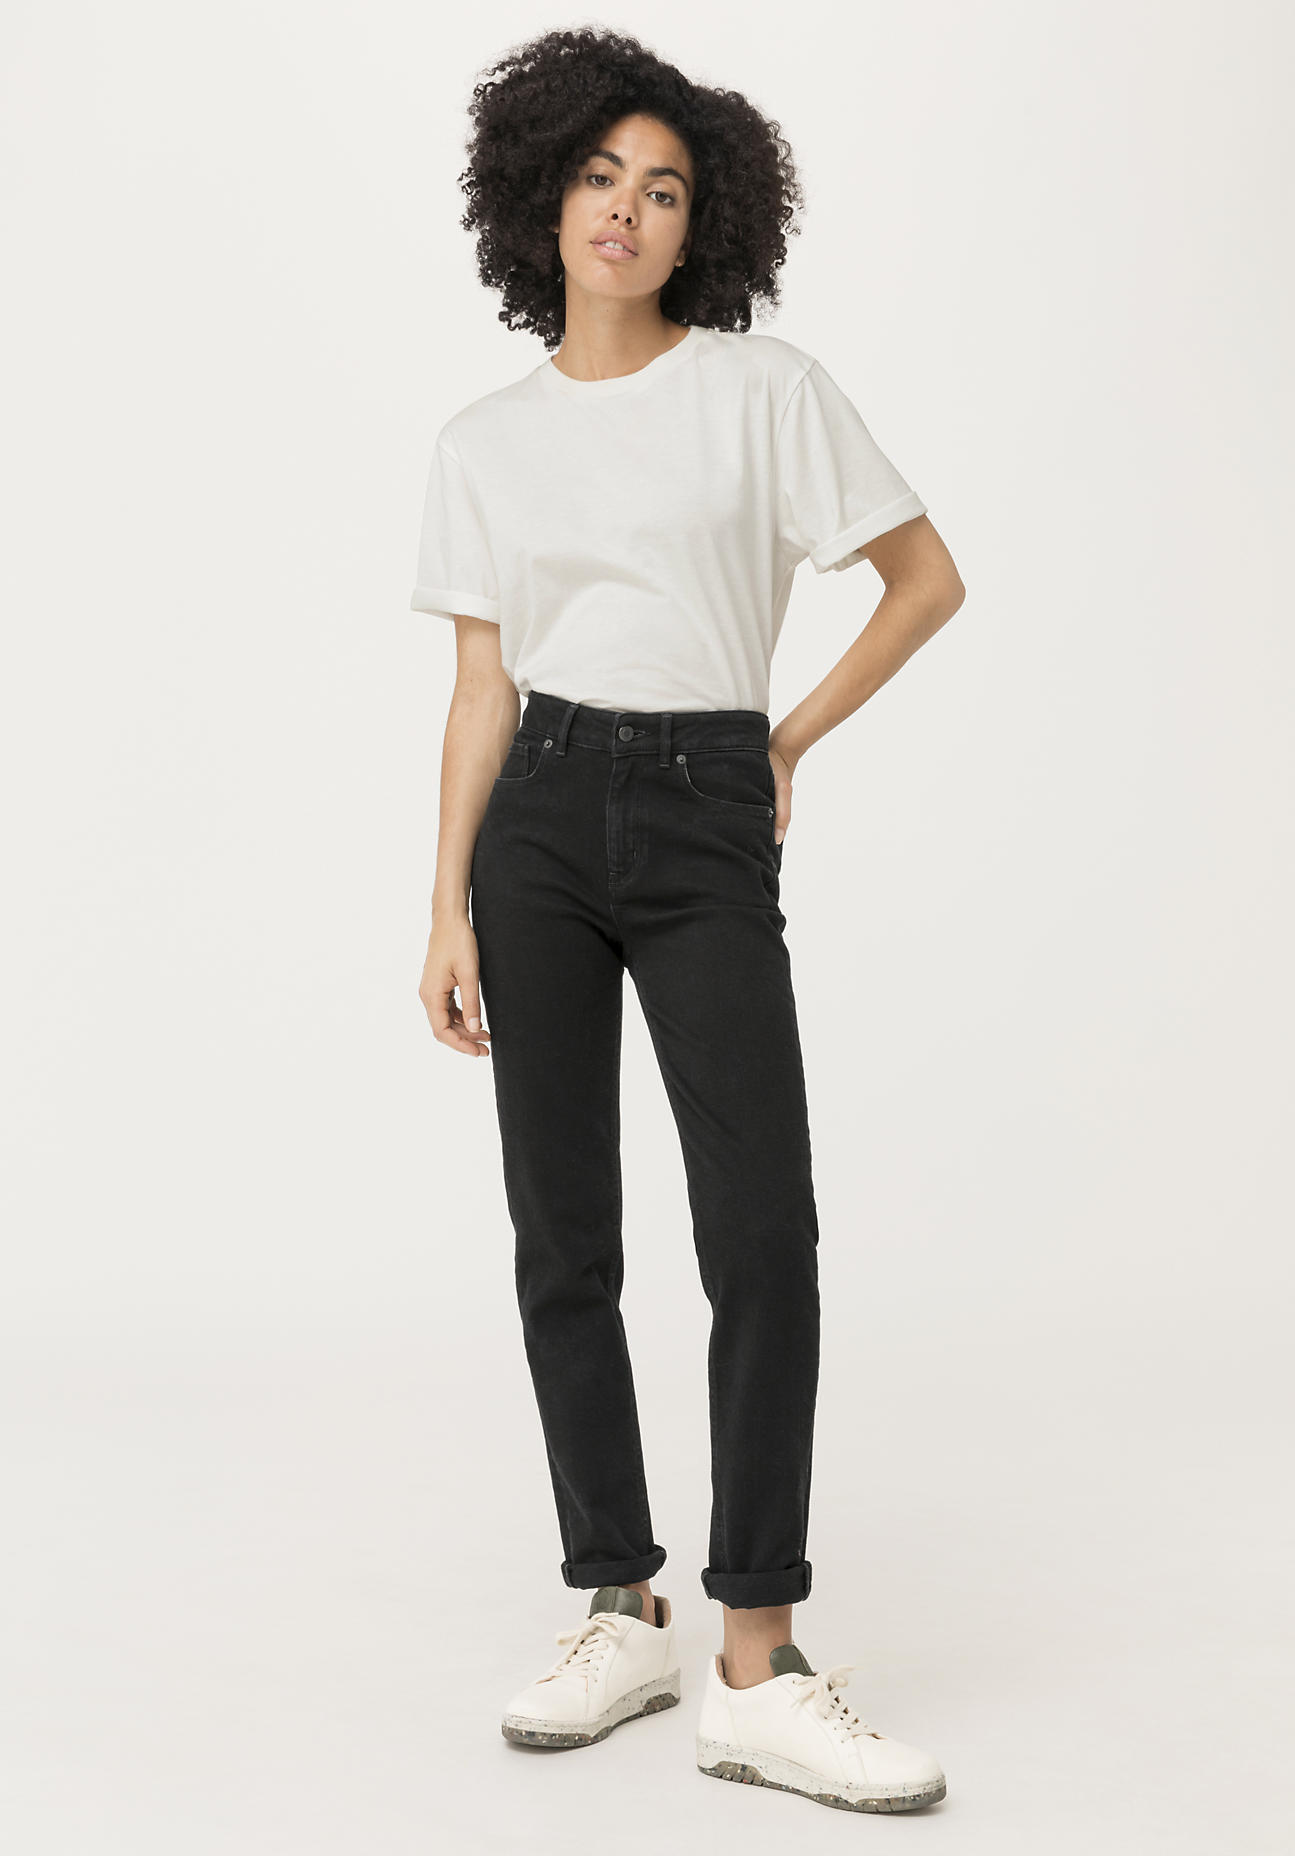 hessnatur Damen Jeans High Rise aus COREVA™ Bio-Denim - schwarz - Größe 28/32